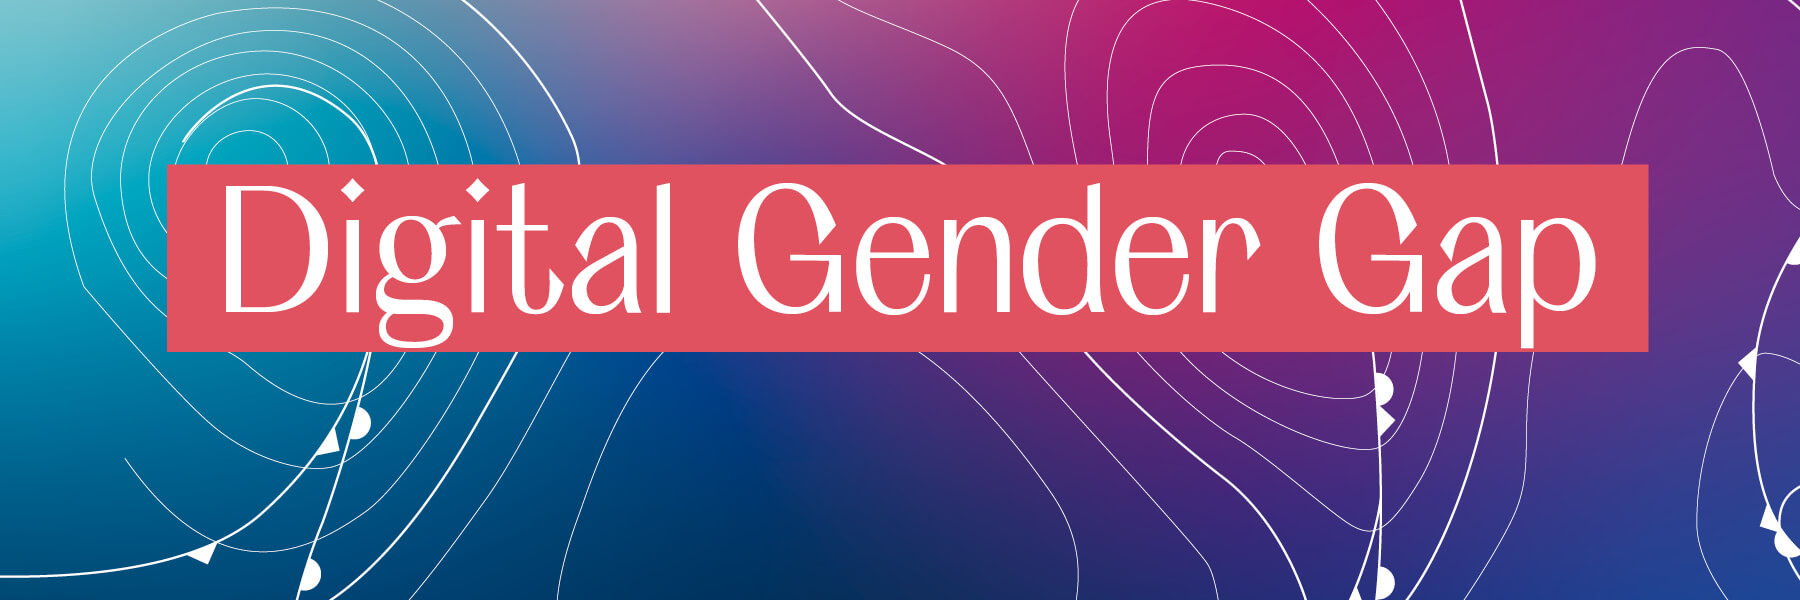 FES Gender Glossar Digital Gender Gap